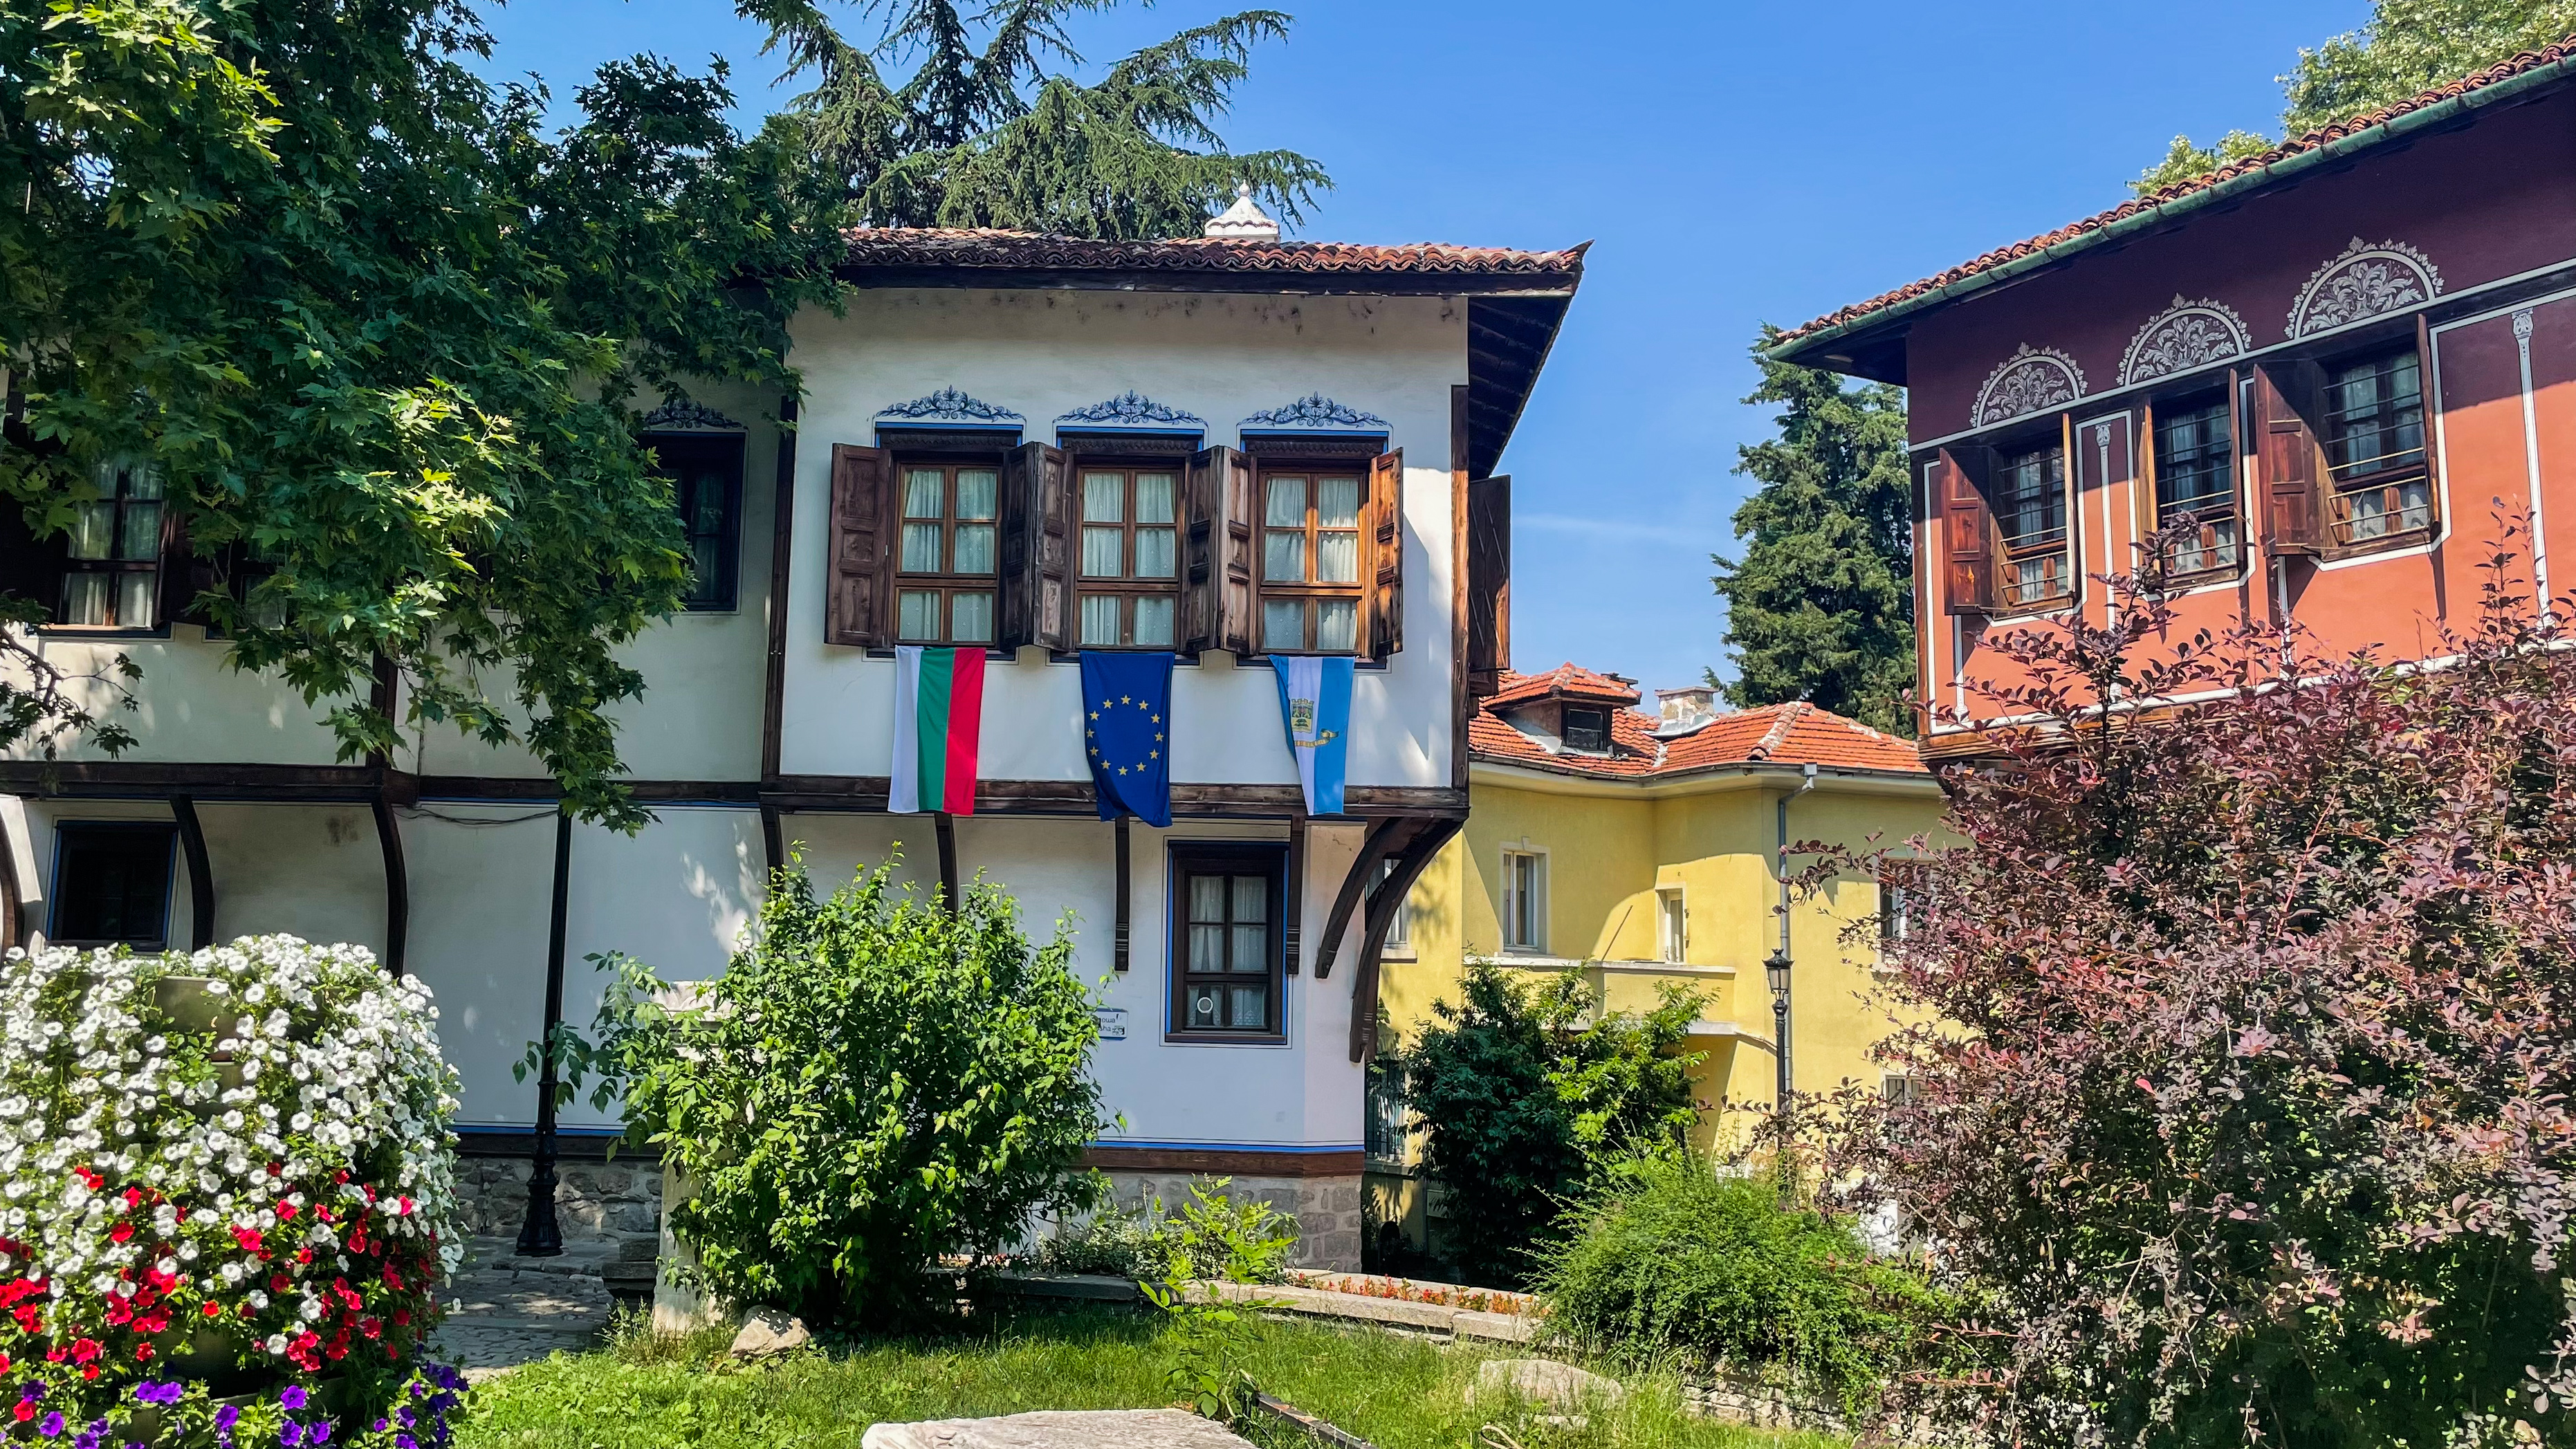 Maison typique de la renaissance bulgare